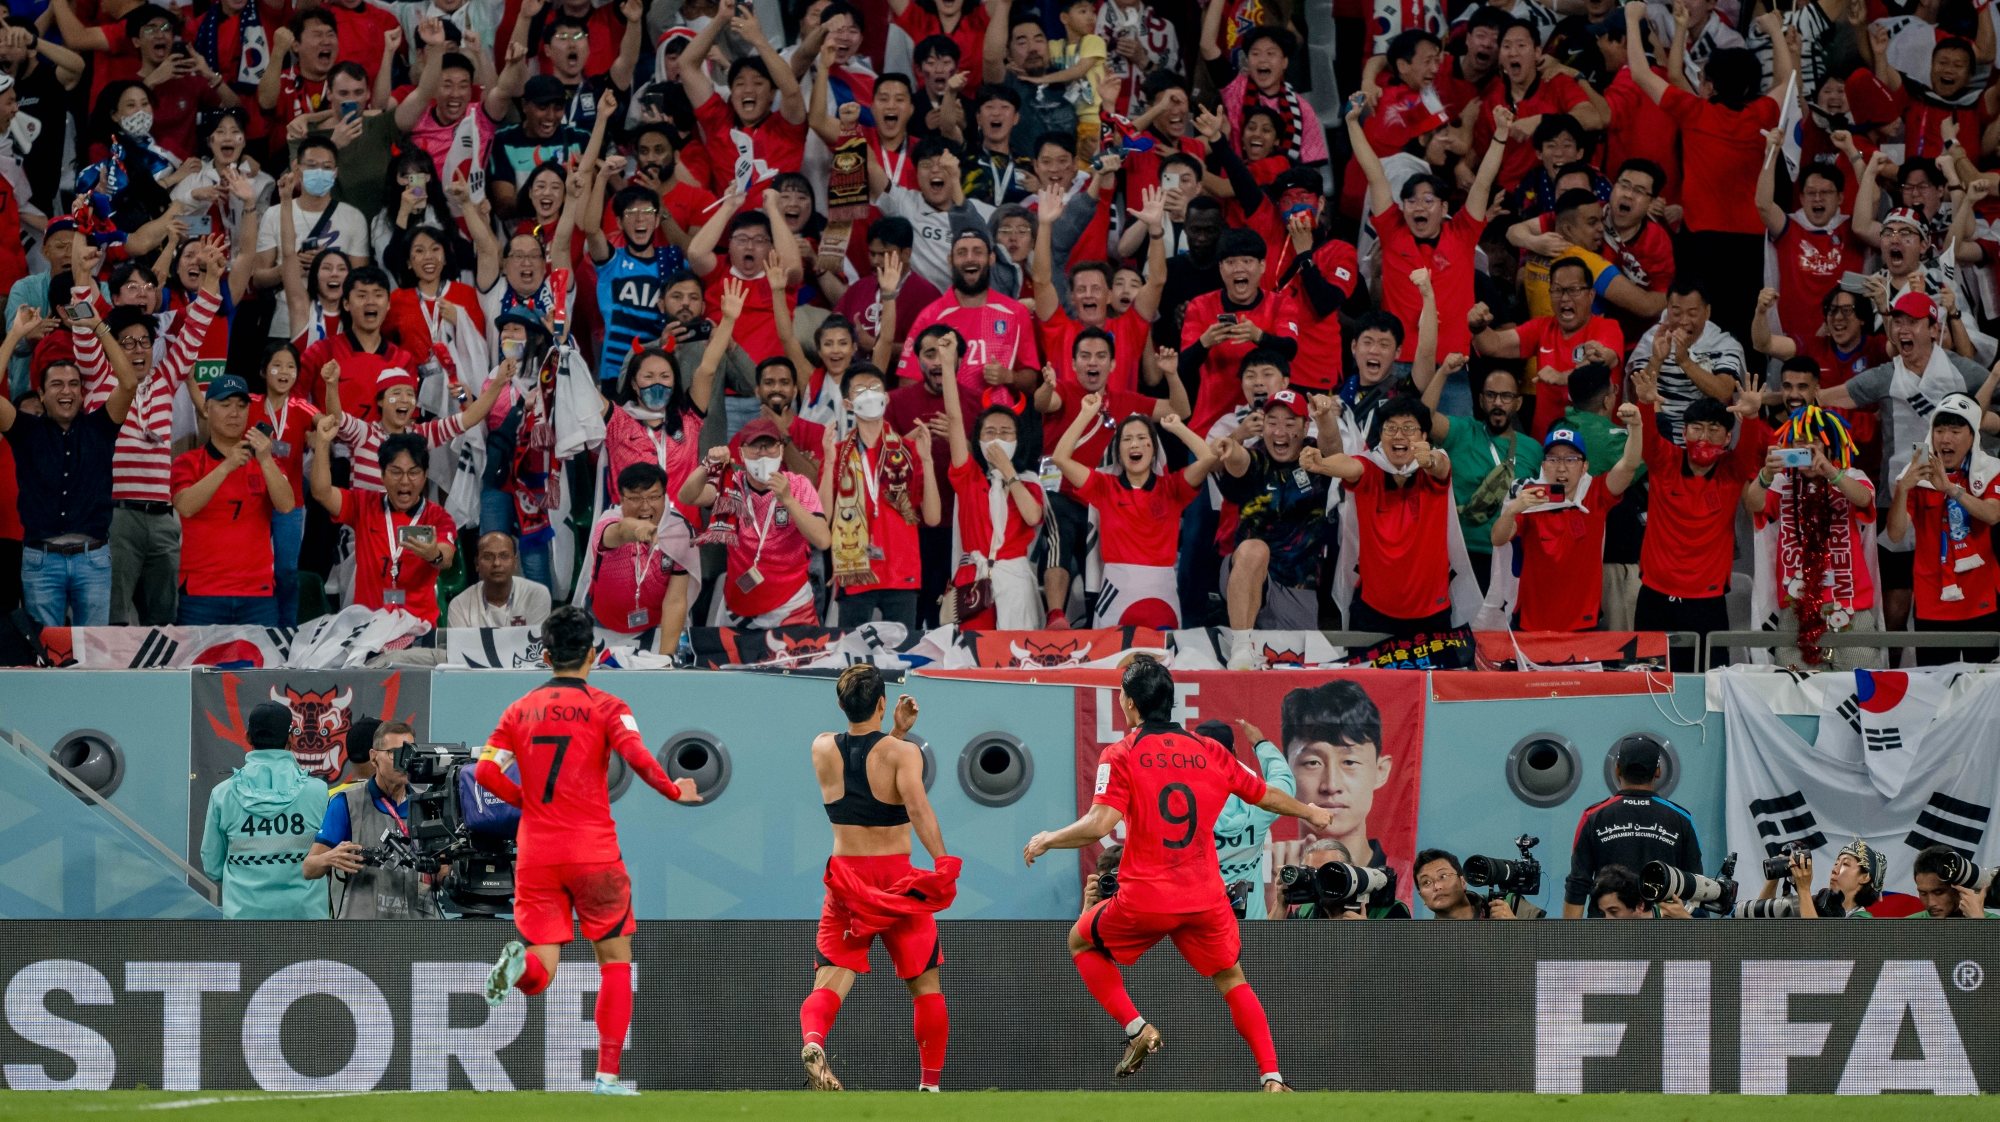 Hwang marcou o golo decisivo frente a Portugal após assistência de Son na sequência de um canto a favor da Seleção e lançaram a festa dos muitos adeptos sul-coreanos